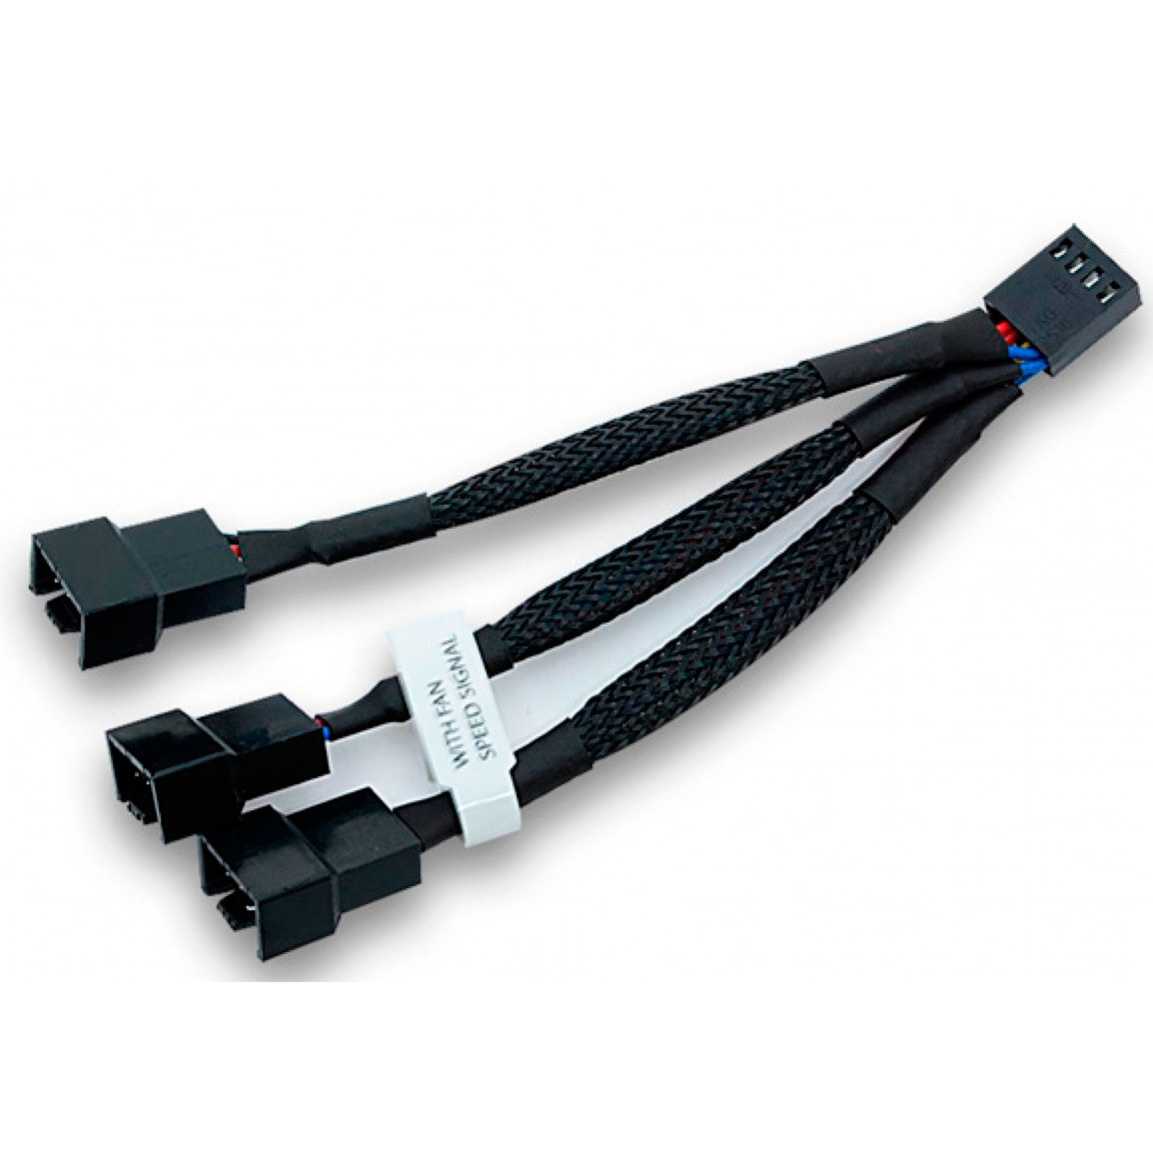 Image of Alternate - 3fach-Splitterkabel für 4 Pin PWM Lüfter, 10cm, Y-Kabel online einkaufen bei Alternate